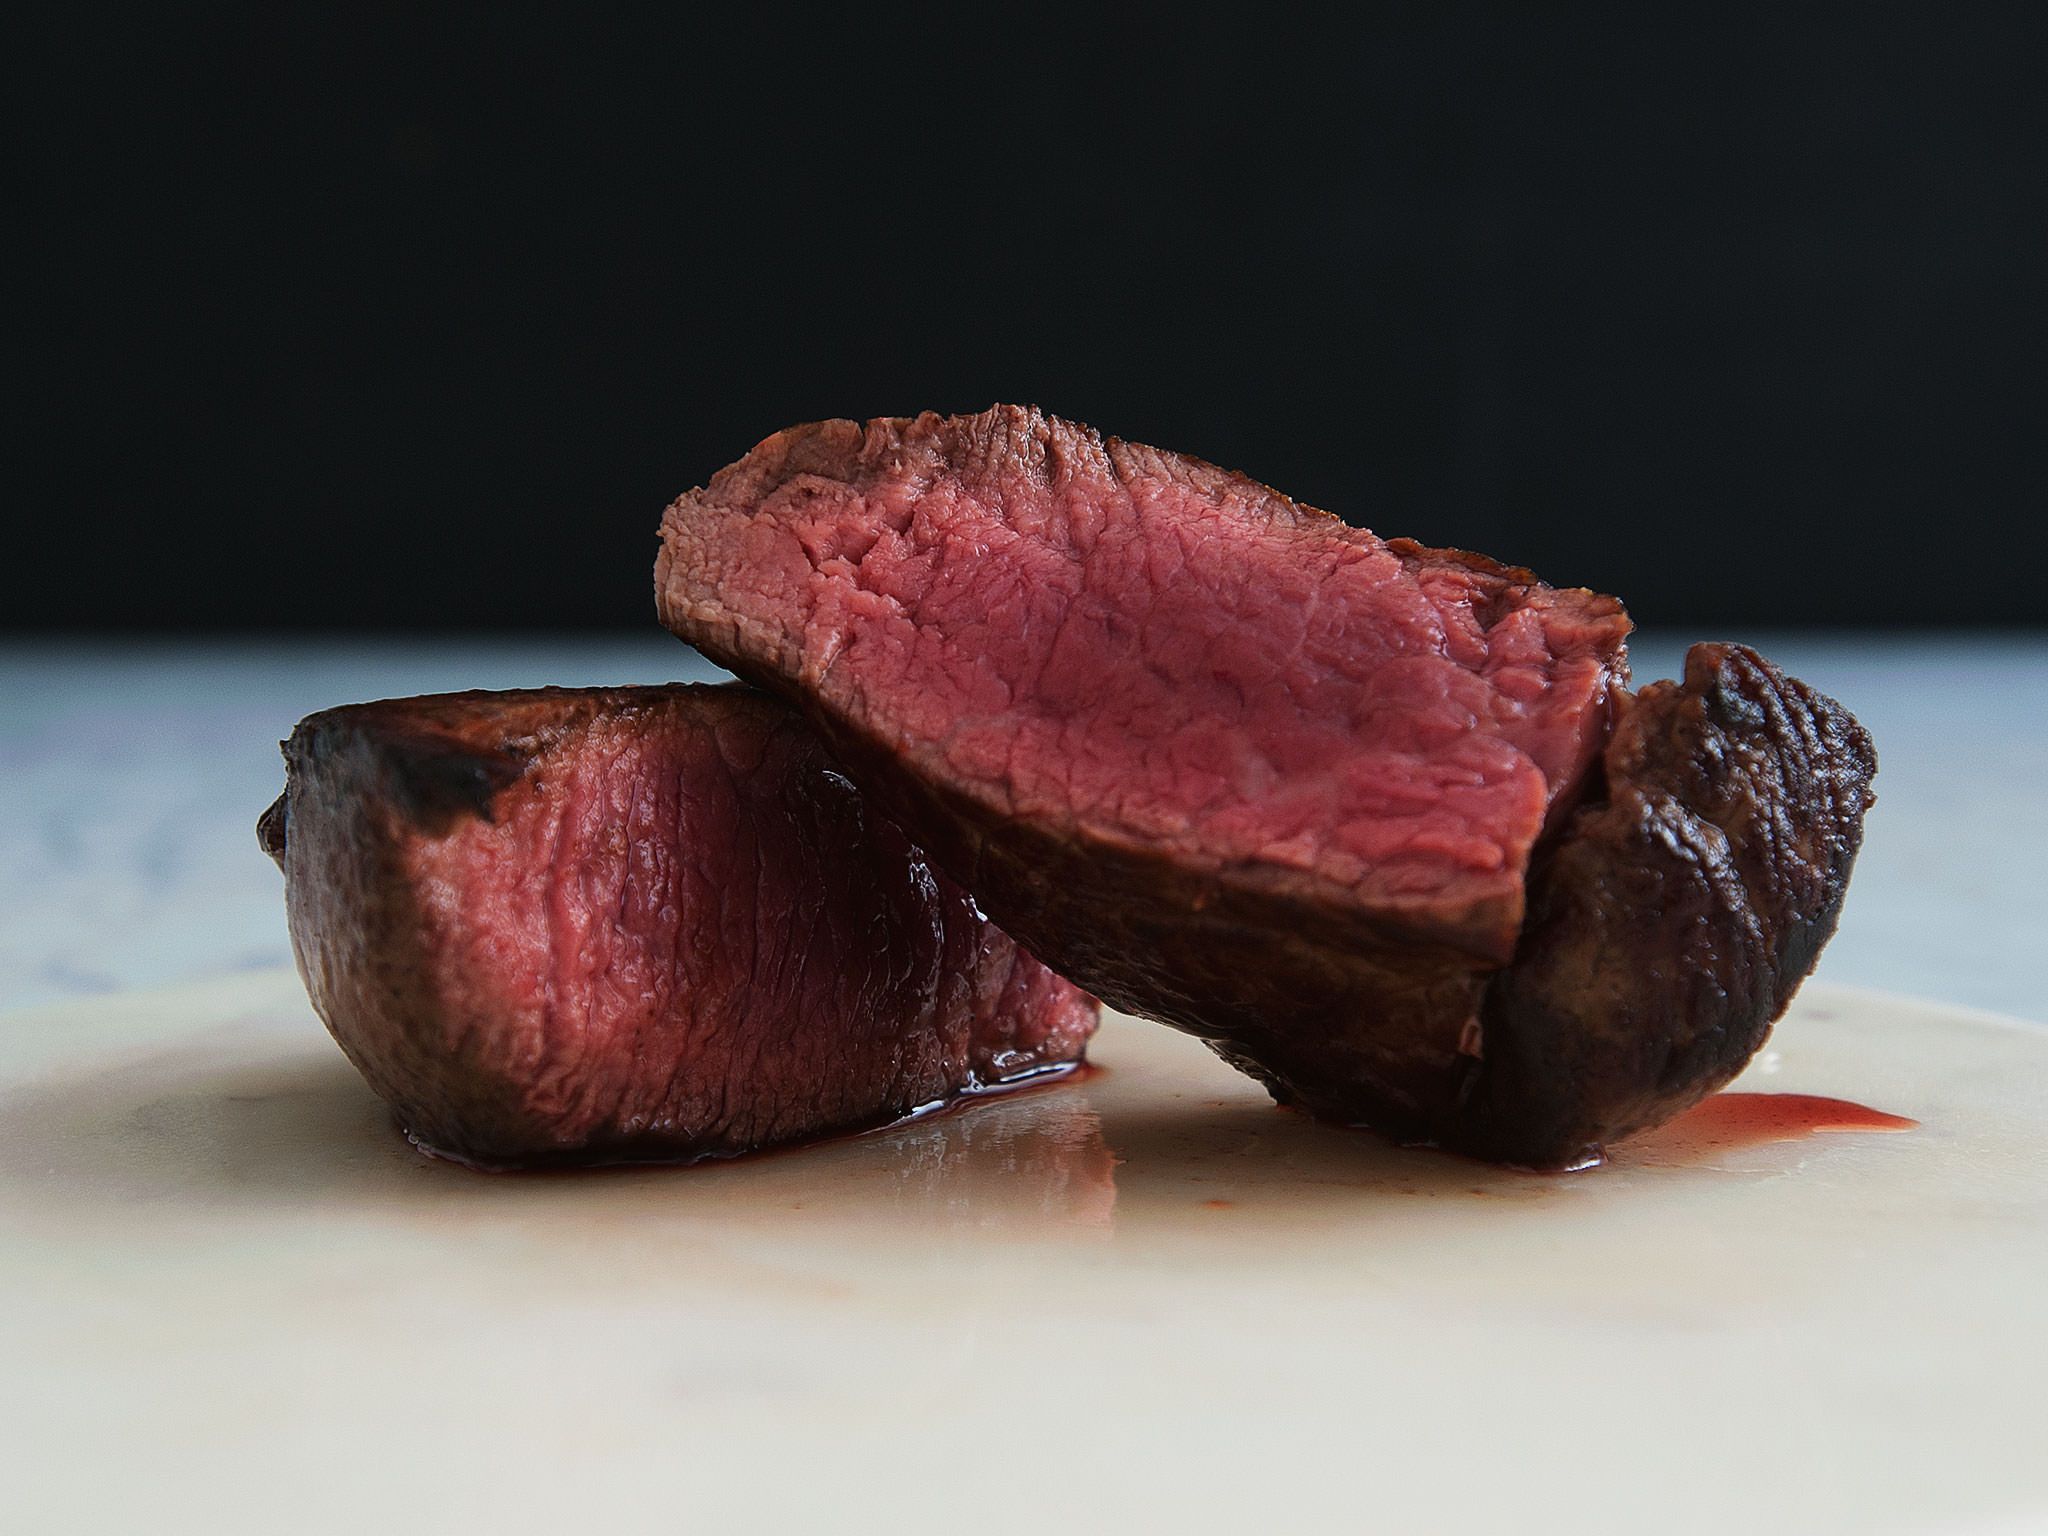  Fleisch Hintergrundbild 2048x1536. Steak in Perfektion Mal